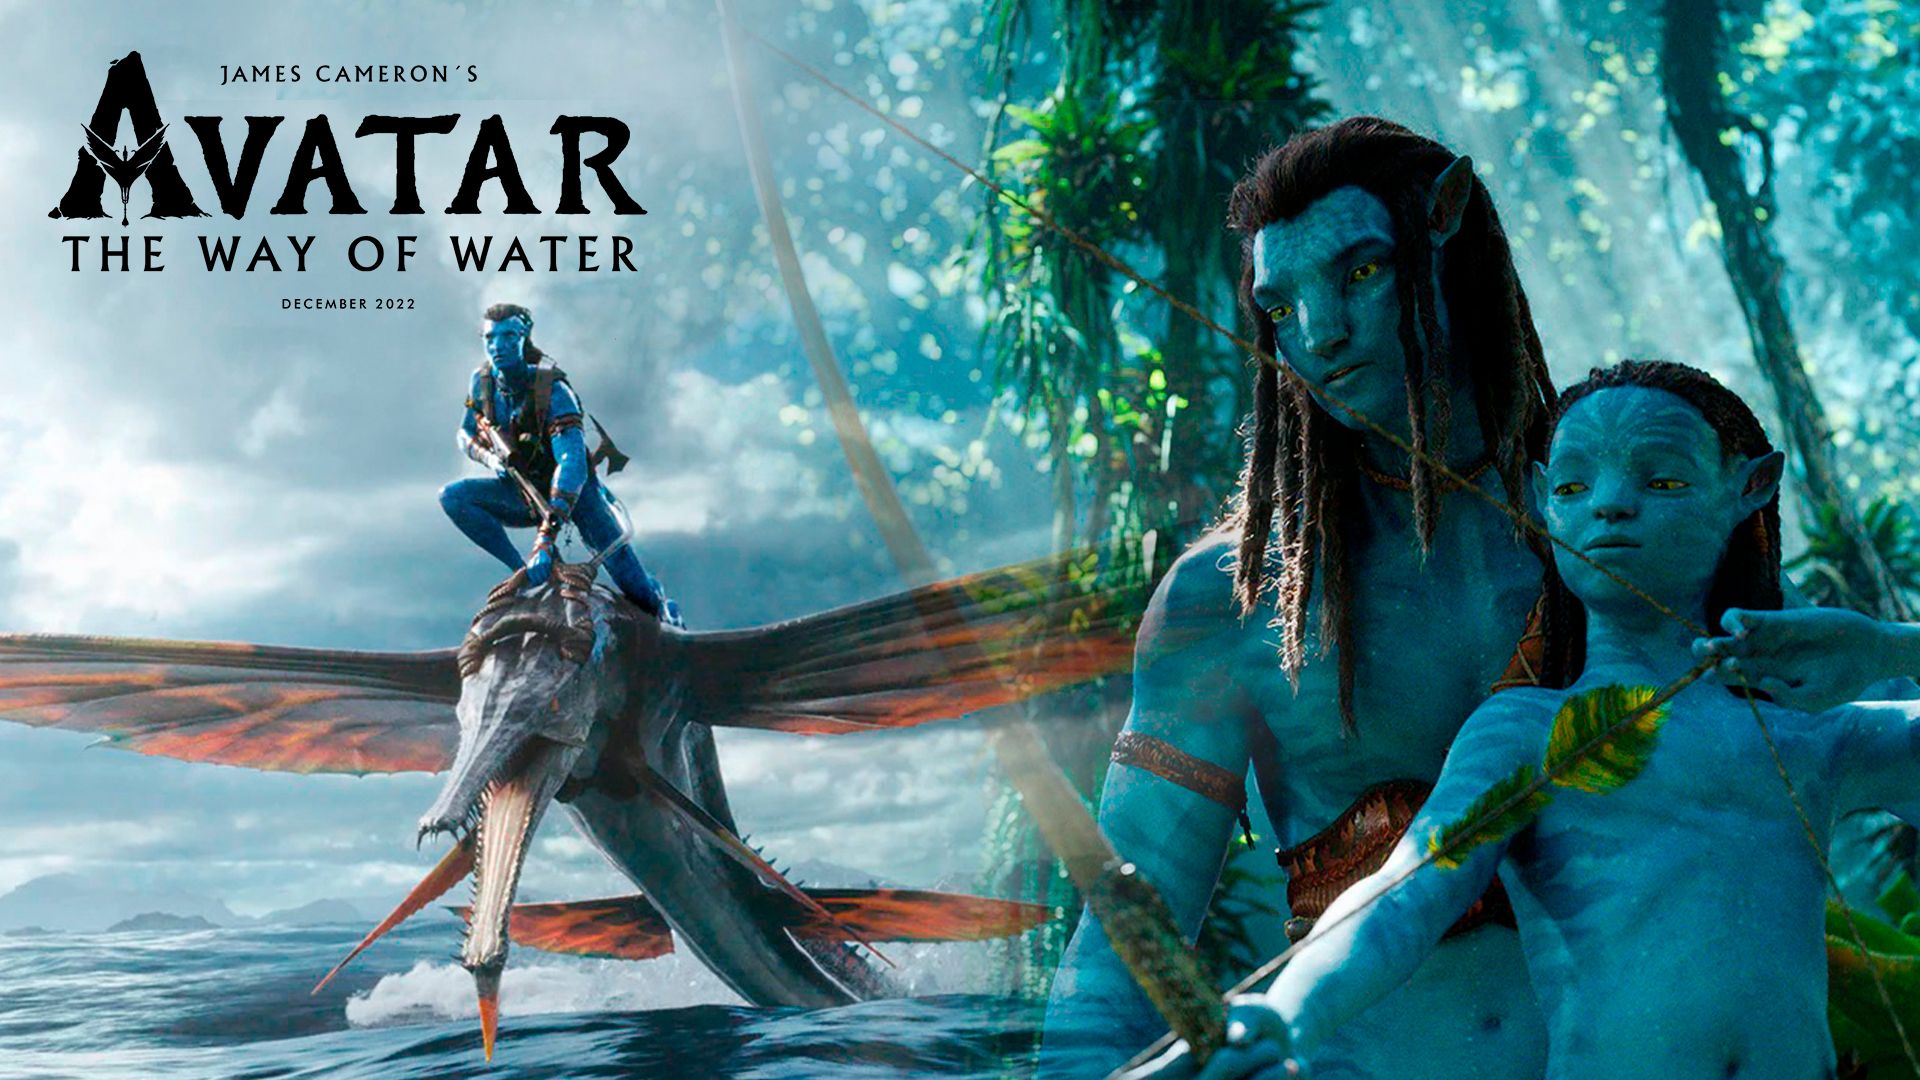 Avatar 2 The Way of Water sẽ là bộ phim hành động, phiêu lưu đến từ đạo diễn James Cameron khiến khán giả háo hức năm